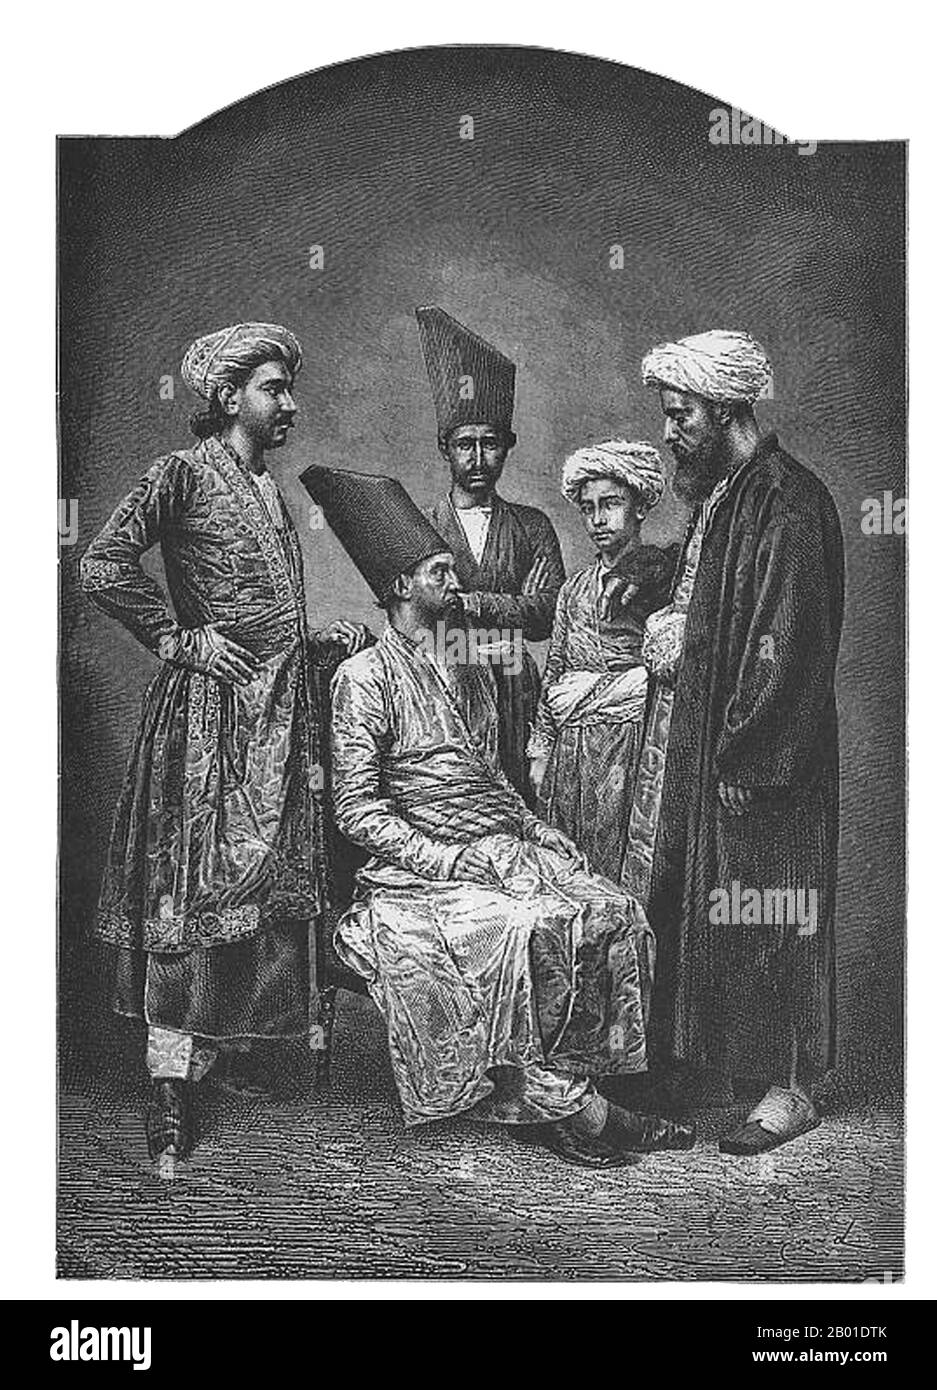 Indien: "Parsees of Bombay". Holzgravierung aus einer Zeichnung von Emile Antoine Bayard (1837-1891), c. 1878. Der Zusammenbruch des persischen Sassanid-Reiches im 7. Jahrhundert CE führte dazu, dass die Staatsreligion vom Zoroastrianismus zum Islam wechselte. Der Zoroastrianismus entwickelte sich langsam von der Religion der meisten im Iran zu einer verfolgten Minderheit. Für das Überleben ihres Glaubens und ihres Lebens entschied sich eine große Zahl von Zoroastriern, auszuwandern. Nach Angaben des Qissa-i Sanjan landete eine Gruppe dieser Flüchtlinge im heutigen Gujarat in Indien, wo ihnen größere Freiheit bei der Einhaltung ihrer alten Bräuche gewährt wurde. Stockfoto